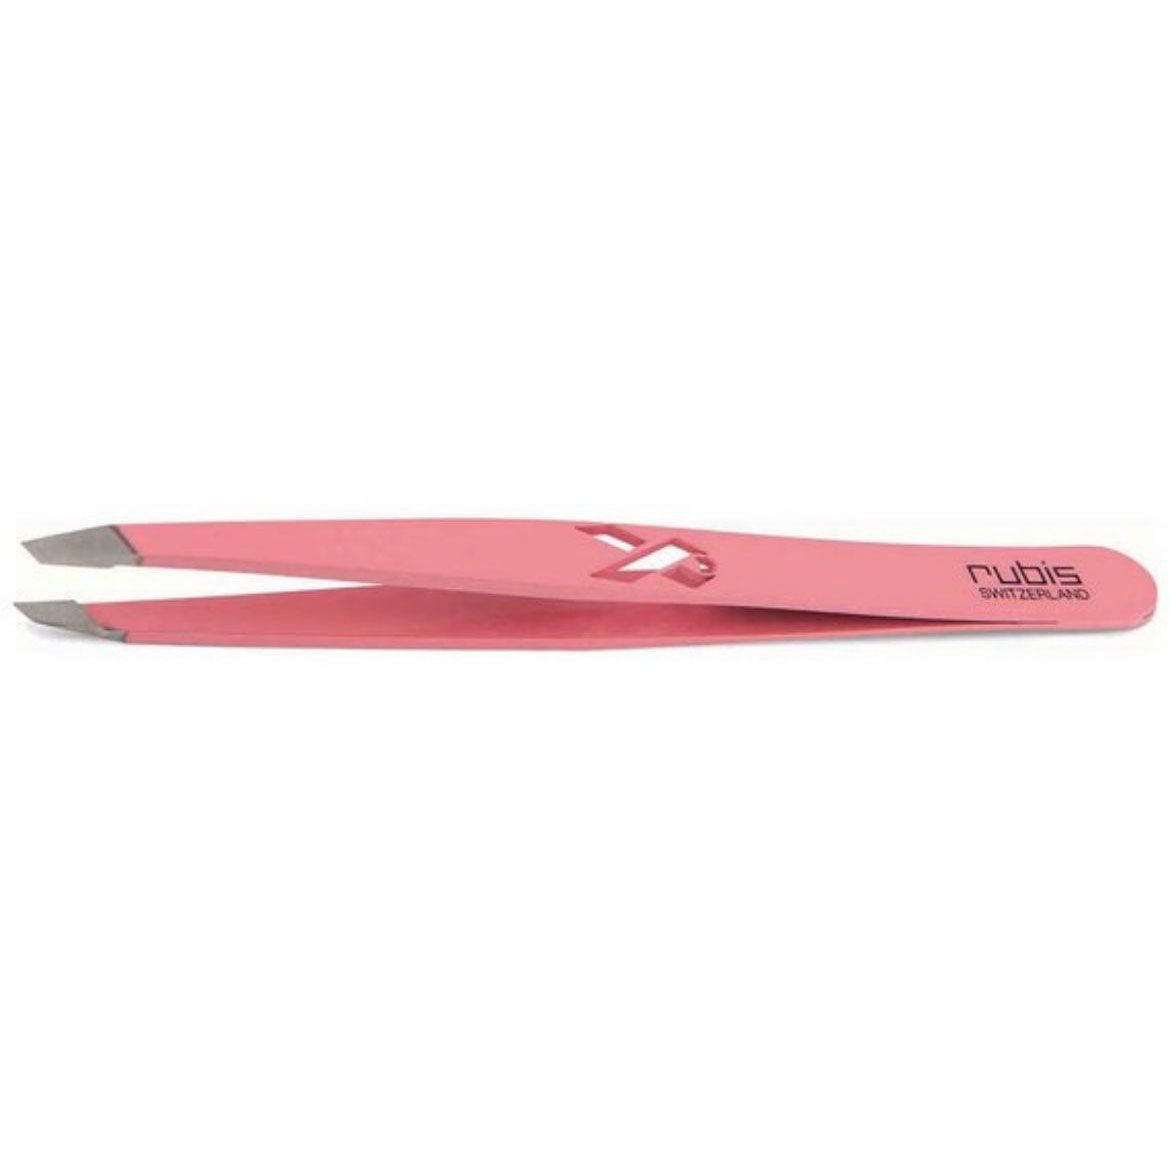 Image of Rubis Tweezers Classic Pink Ribbon pink